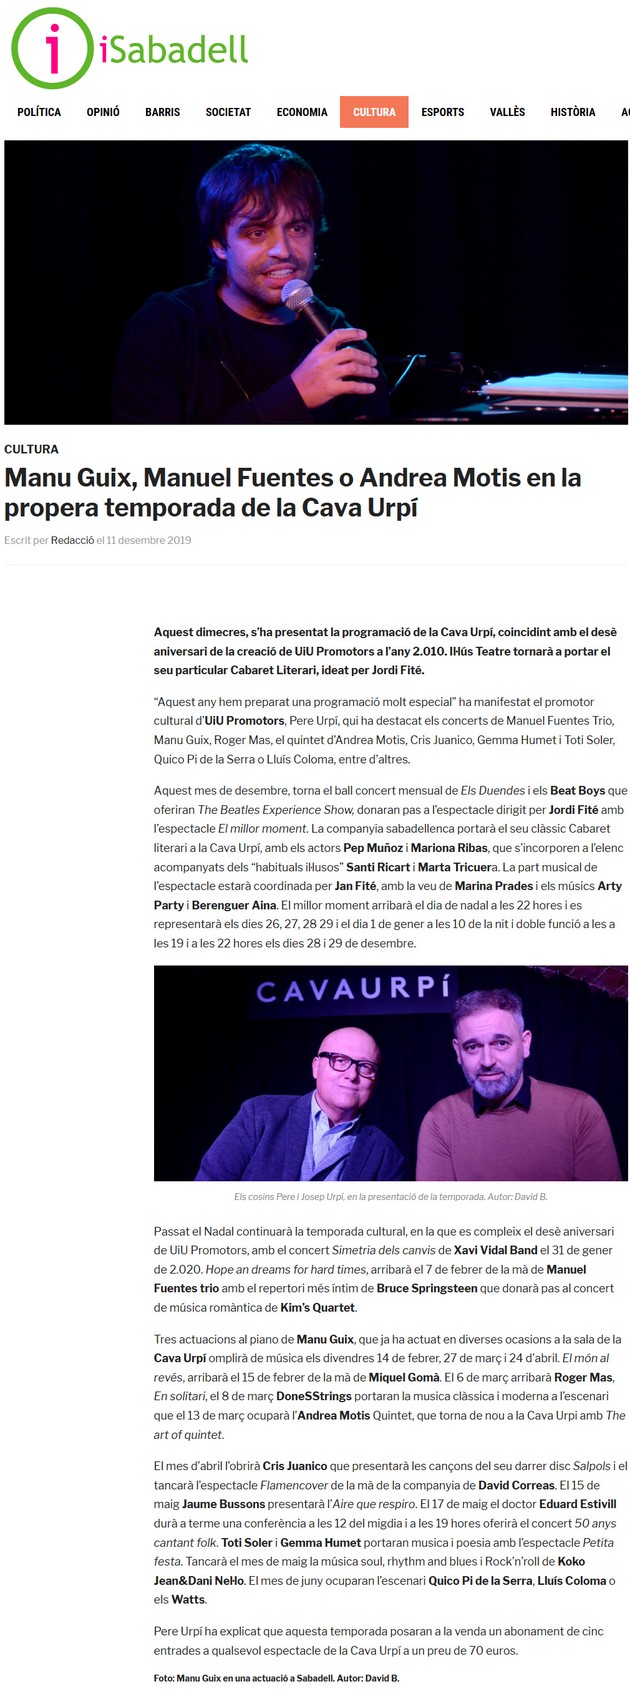 iSabadell: Manu Guix, Manuel Fuentes o Andrea Motis en la propera temporada de la Cava Urpí